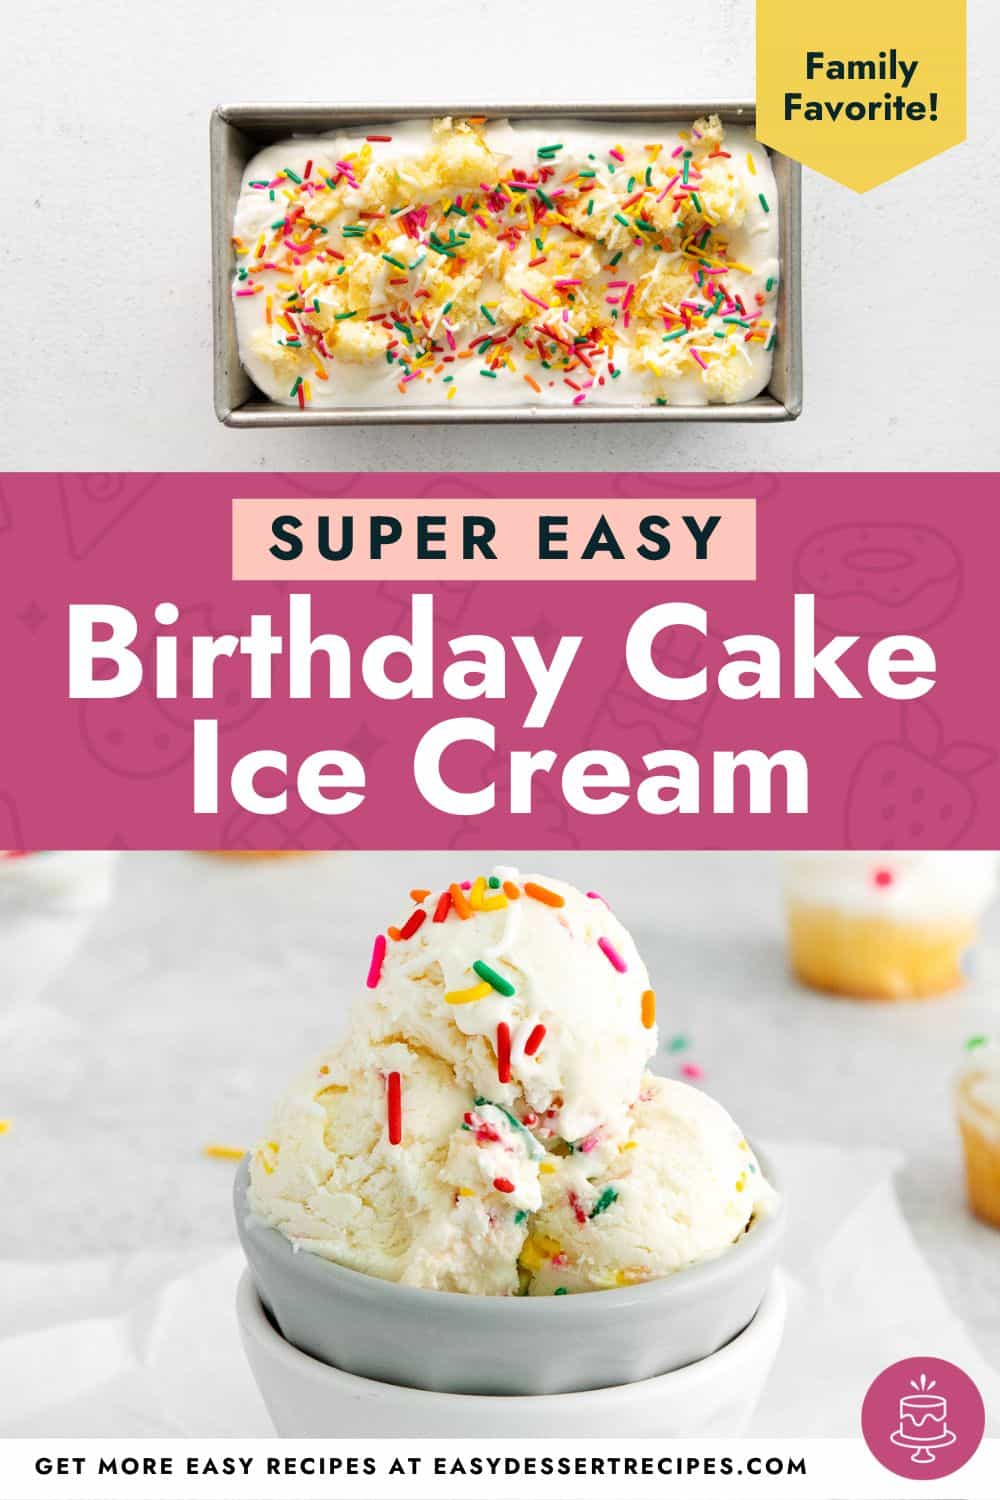 Super easy birthday cake ice cream.